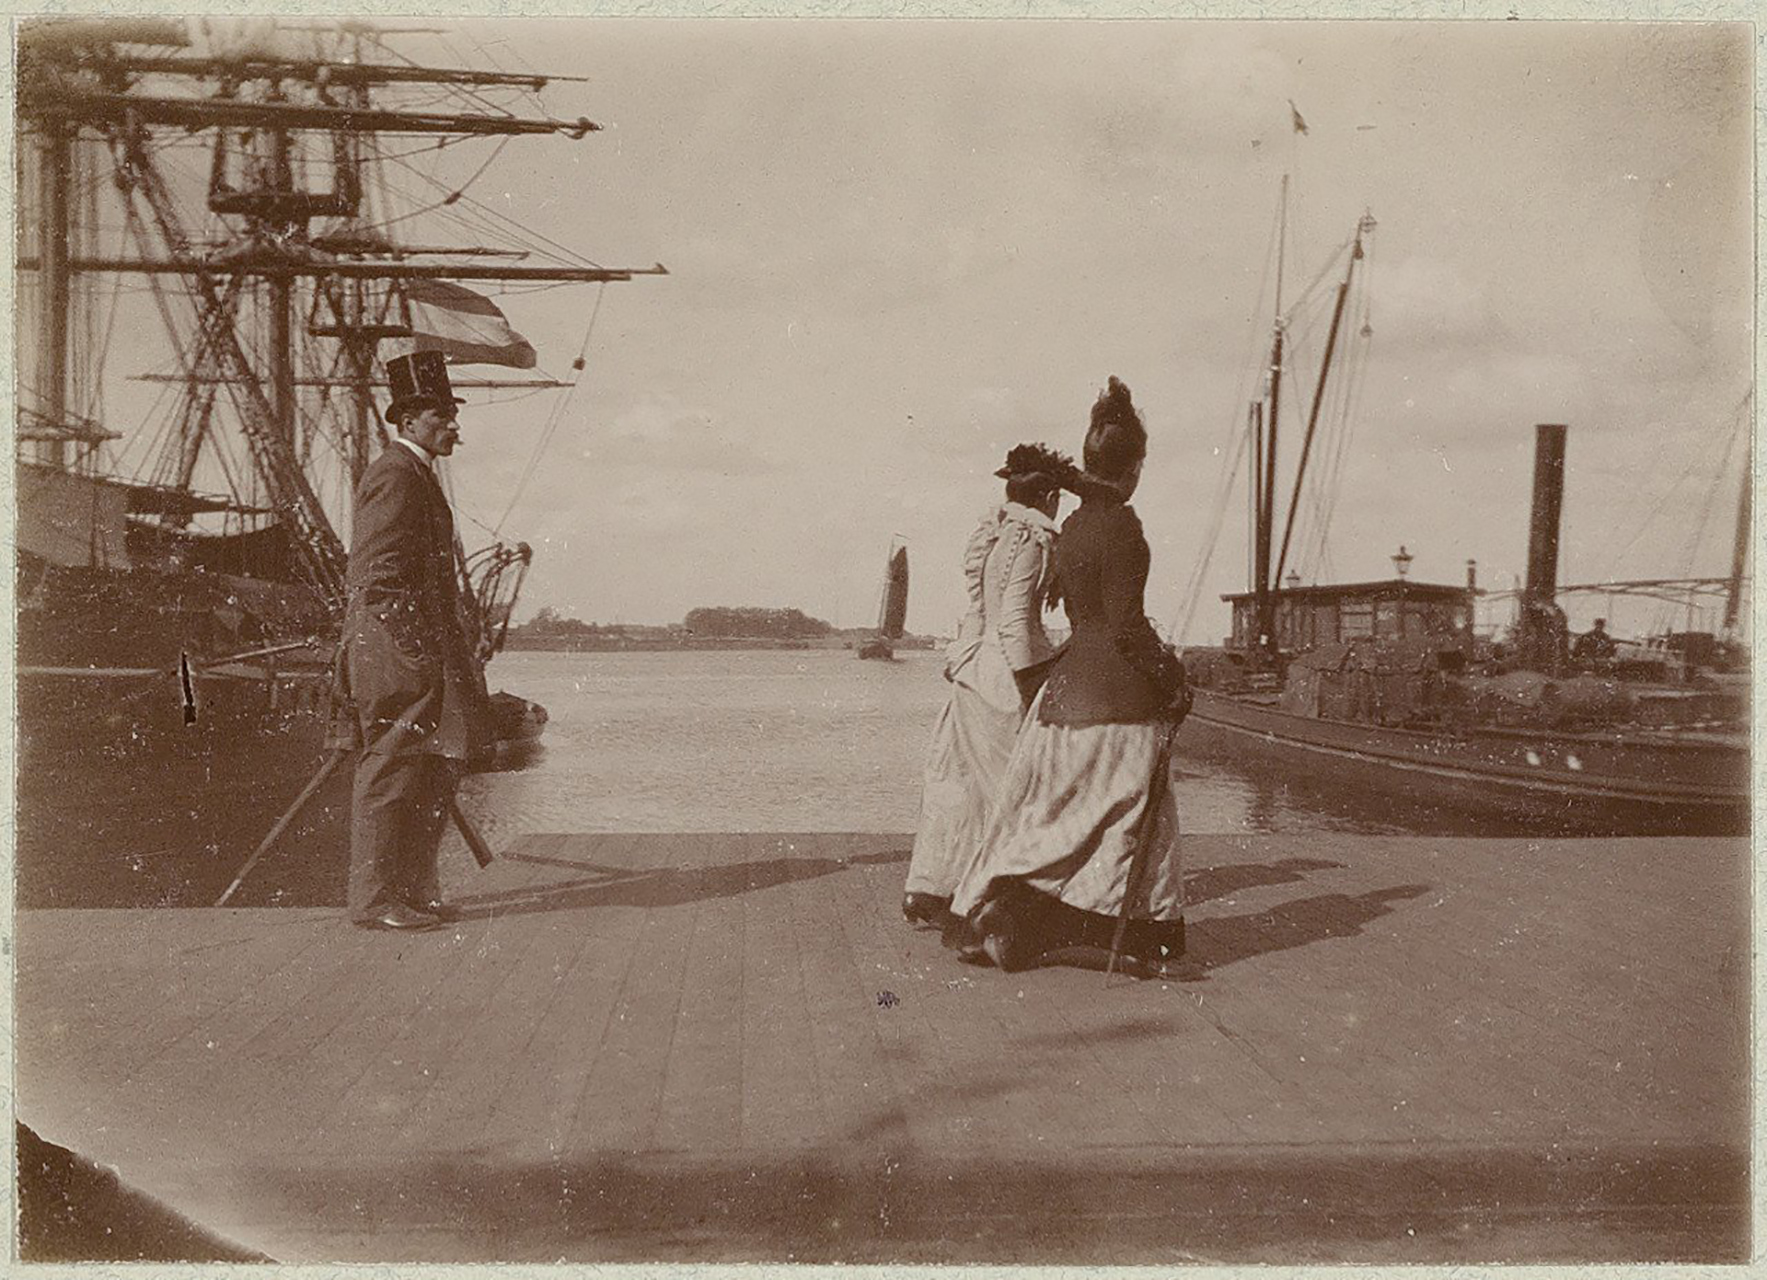 Ruijterkade, Amsterdam 1891. Photograph: C. 't Hooft. © Stadsarchief Amsterdam